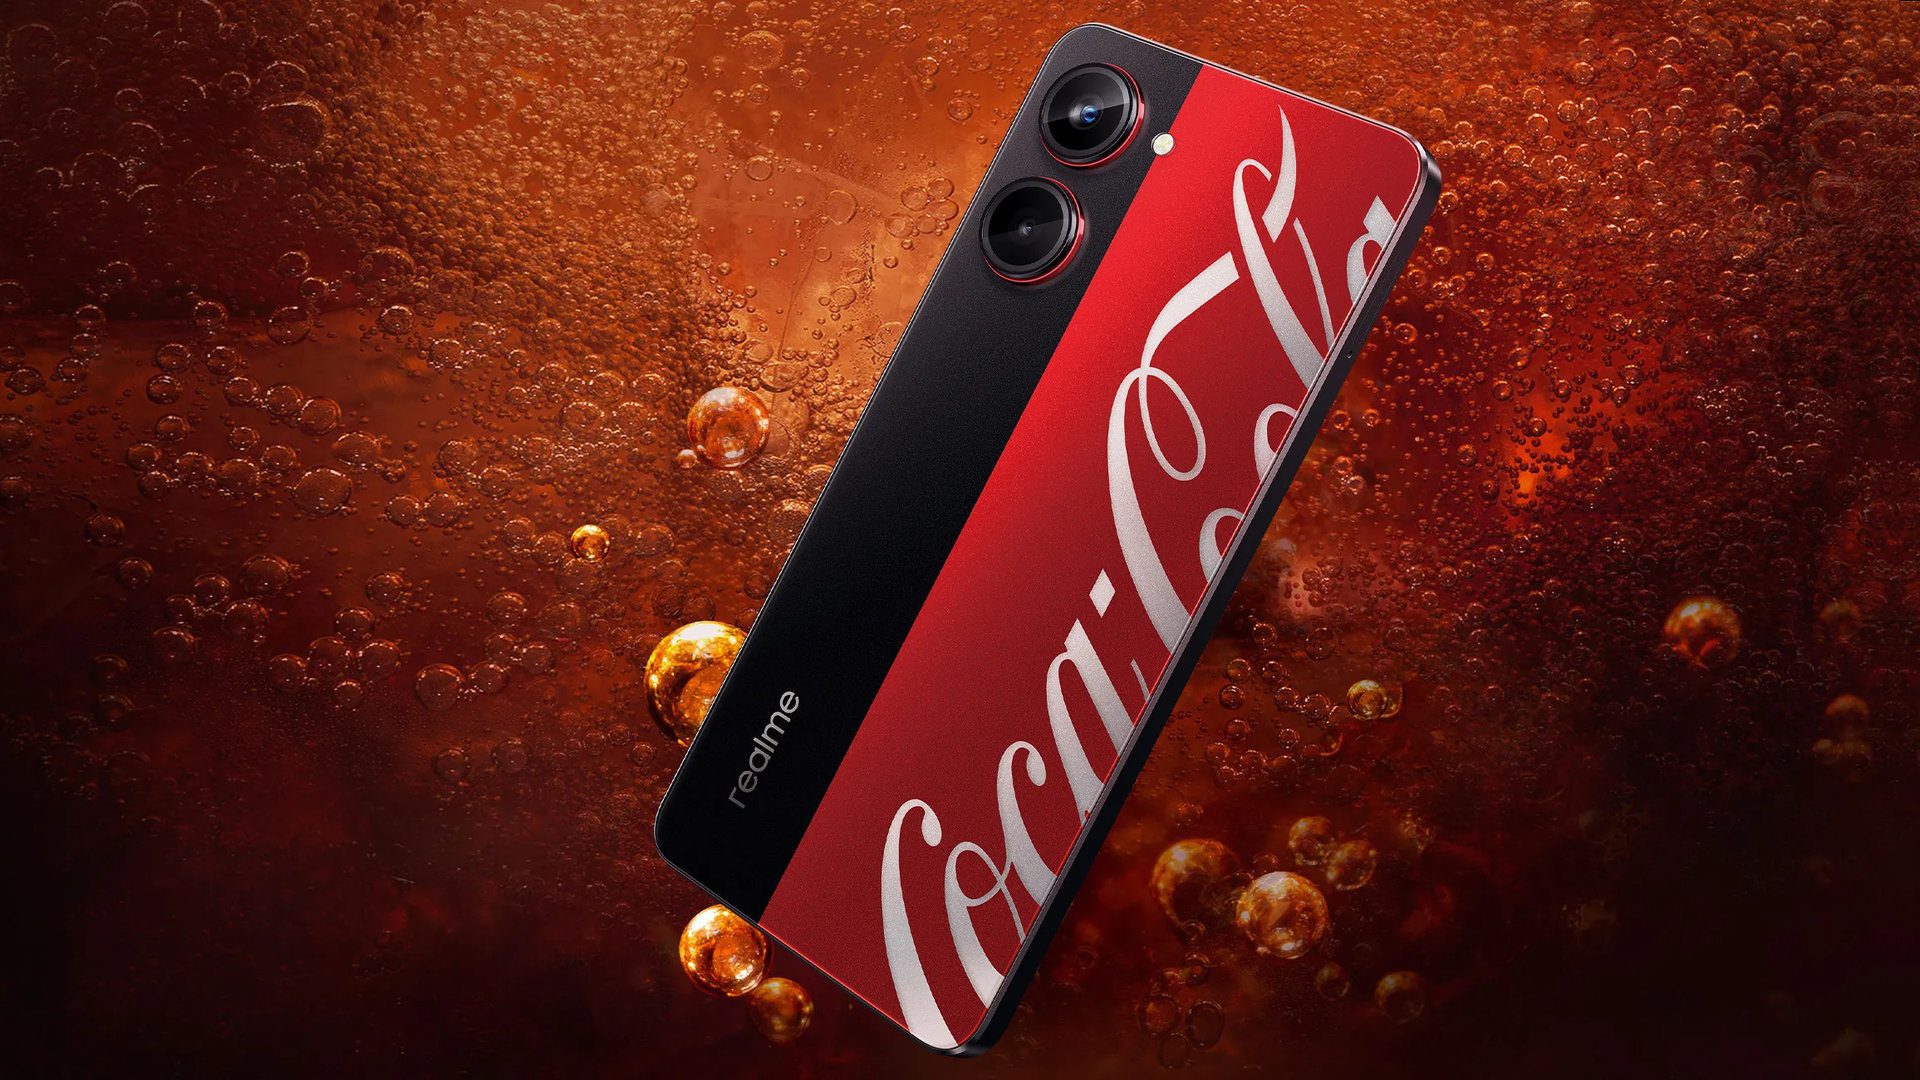 Artık 525 Kola kutusu fiyatına bir Coca-Cola telefonu satın alabilirsiniz.